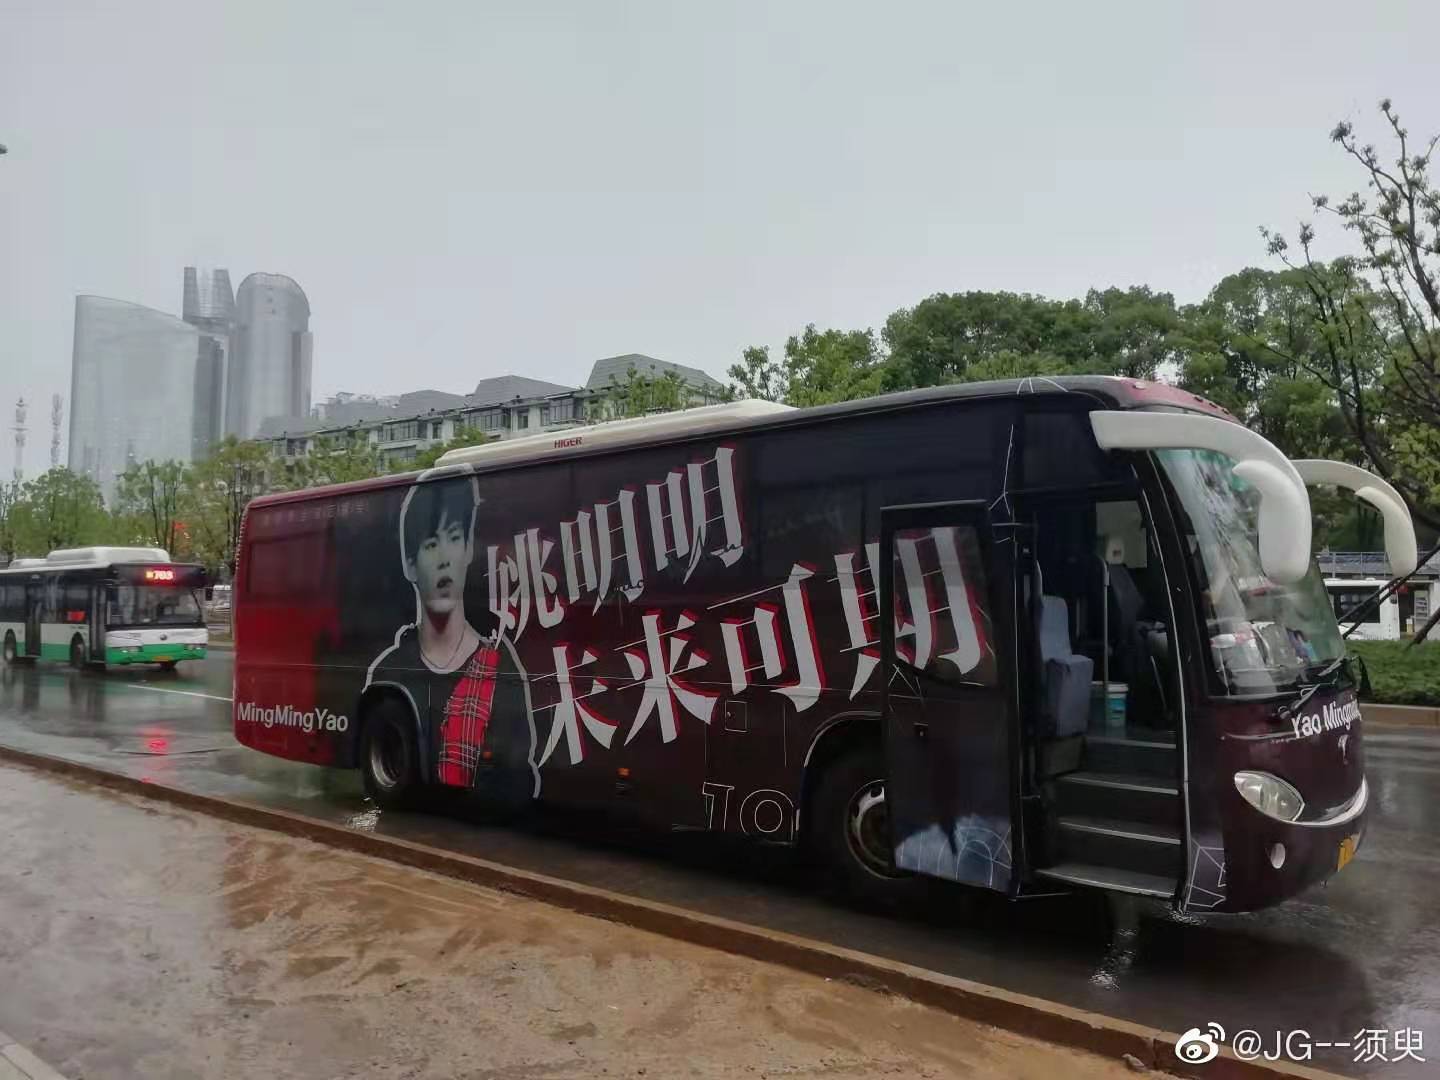 广州定制大巴车体广告|广州巴士定制广告发布|广州大巴定制车广告发布